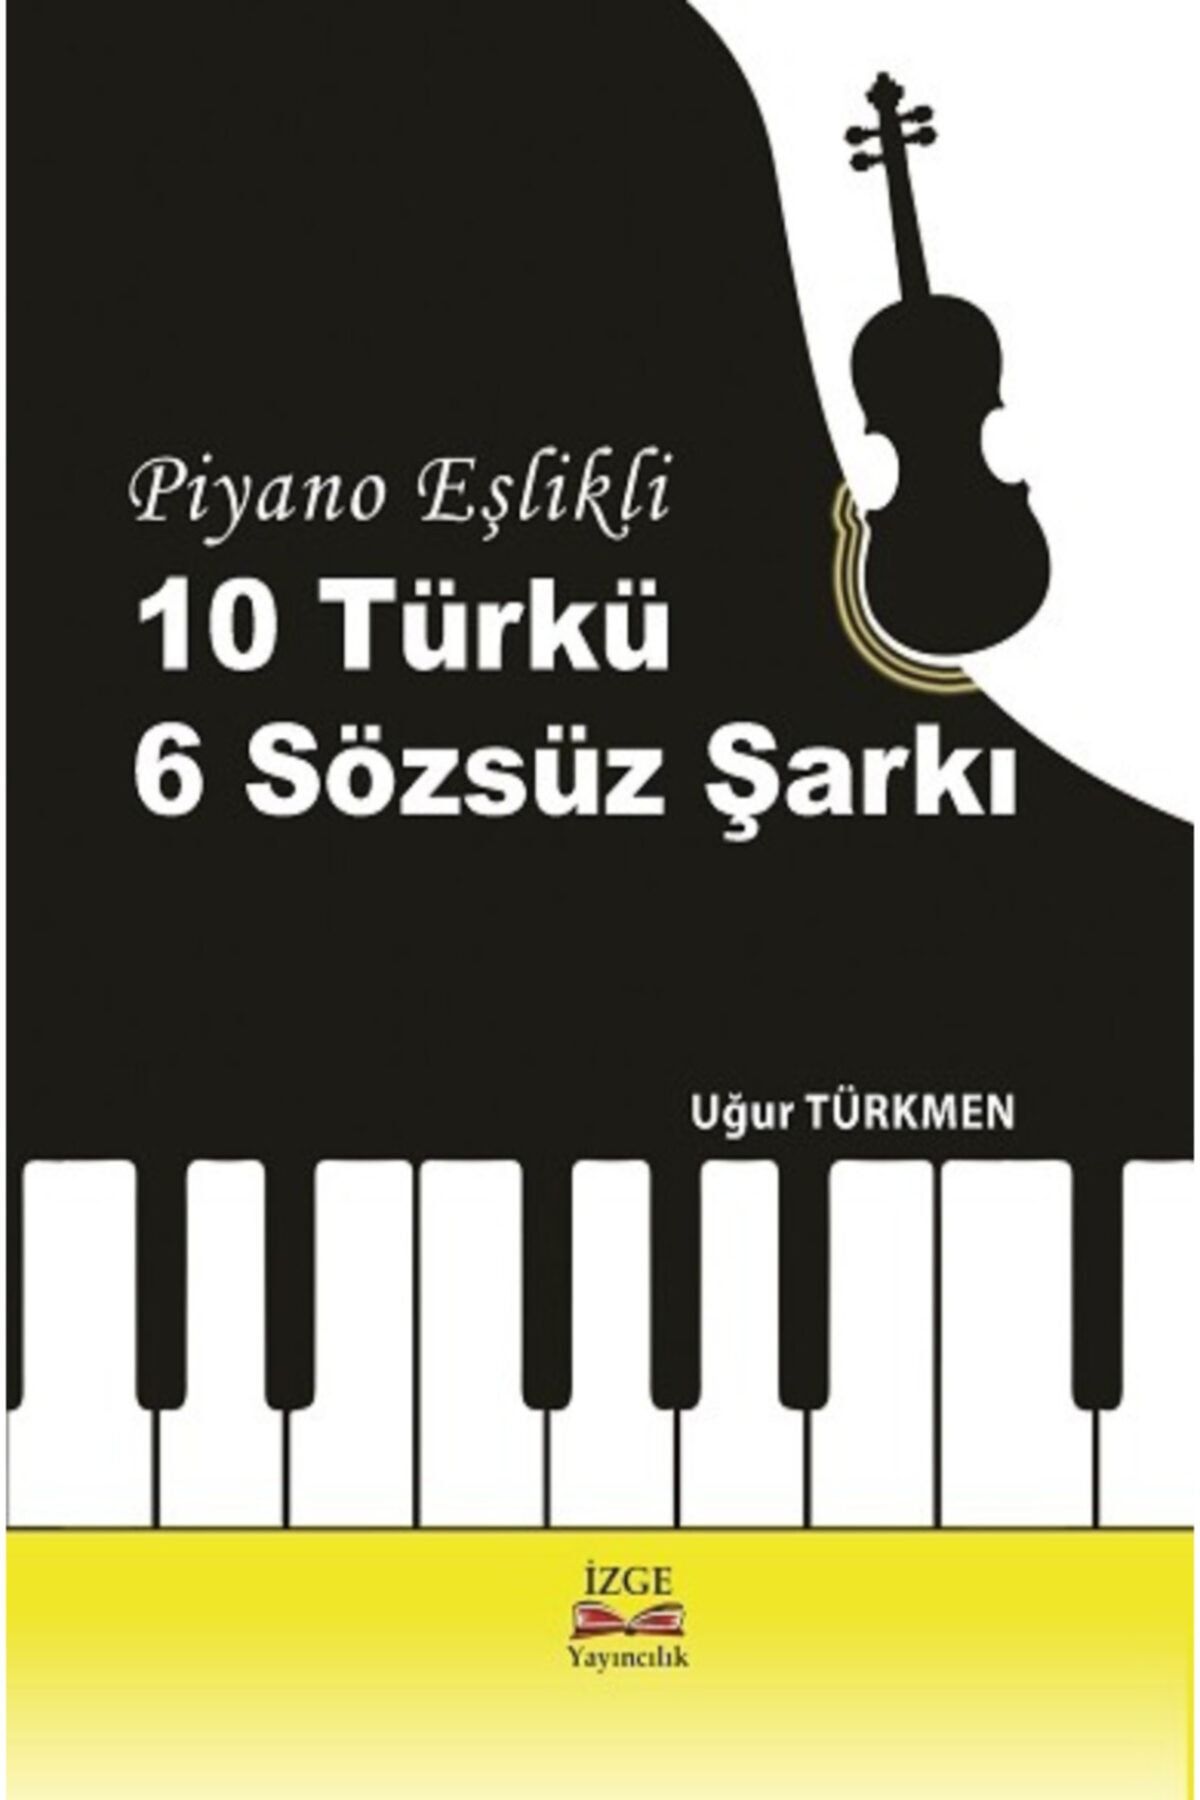 İzge Yayıncılık Piyano Eşlikli 10 Türkü 6 Sözsüz Şarkı - Uğur Türkmen -